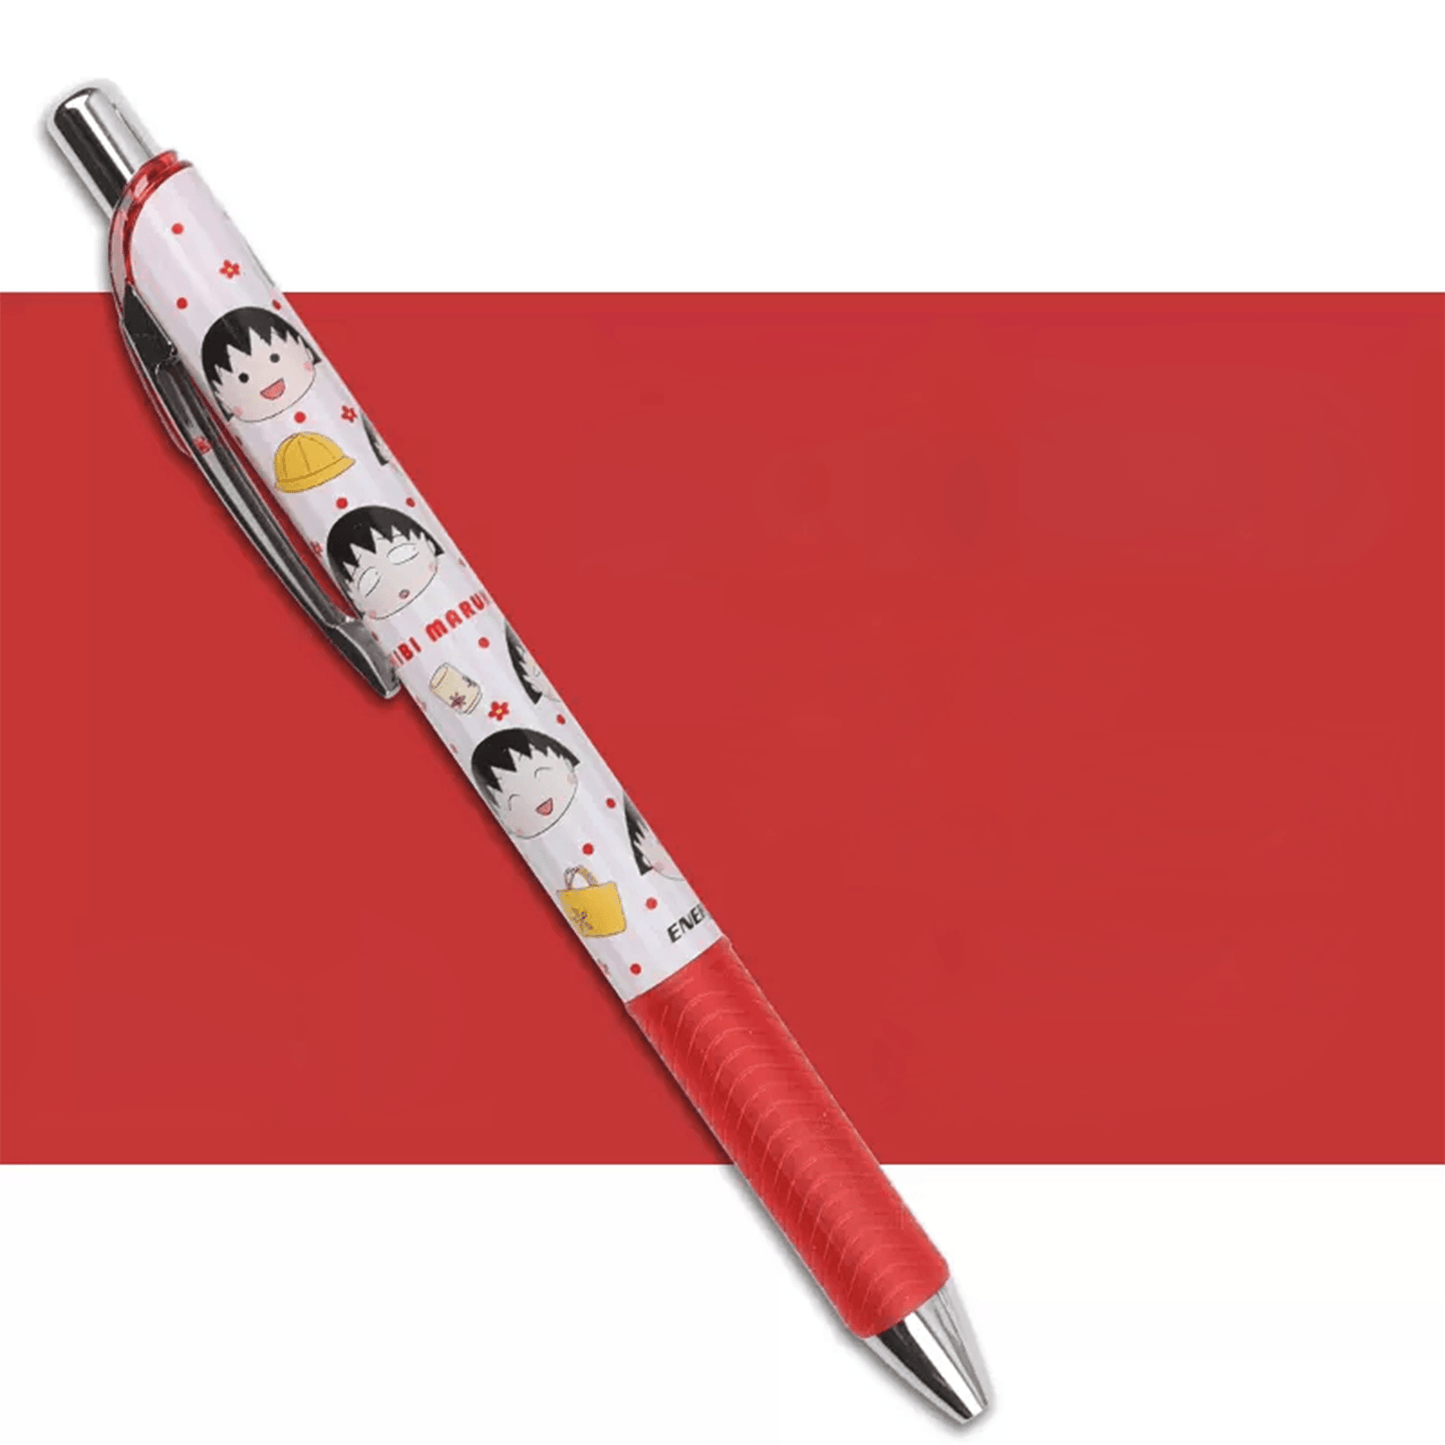 Gel pen Chibi Maruko ballpoint pen ENTEL ENERGEL 0.5MM new black ink gel pen Japan cartoon character stationery student office school 4729-649 - CHL-STORE 